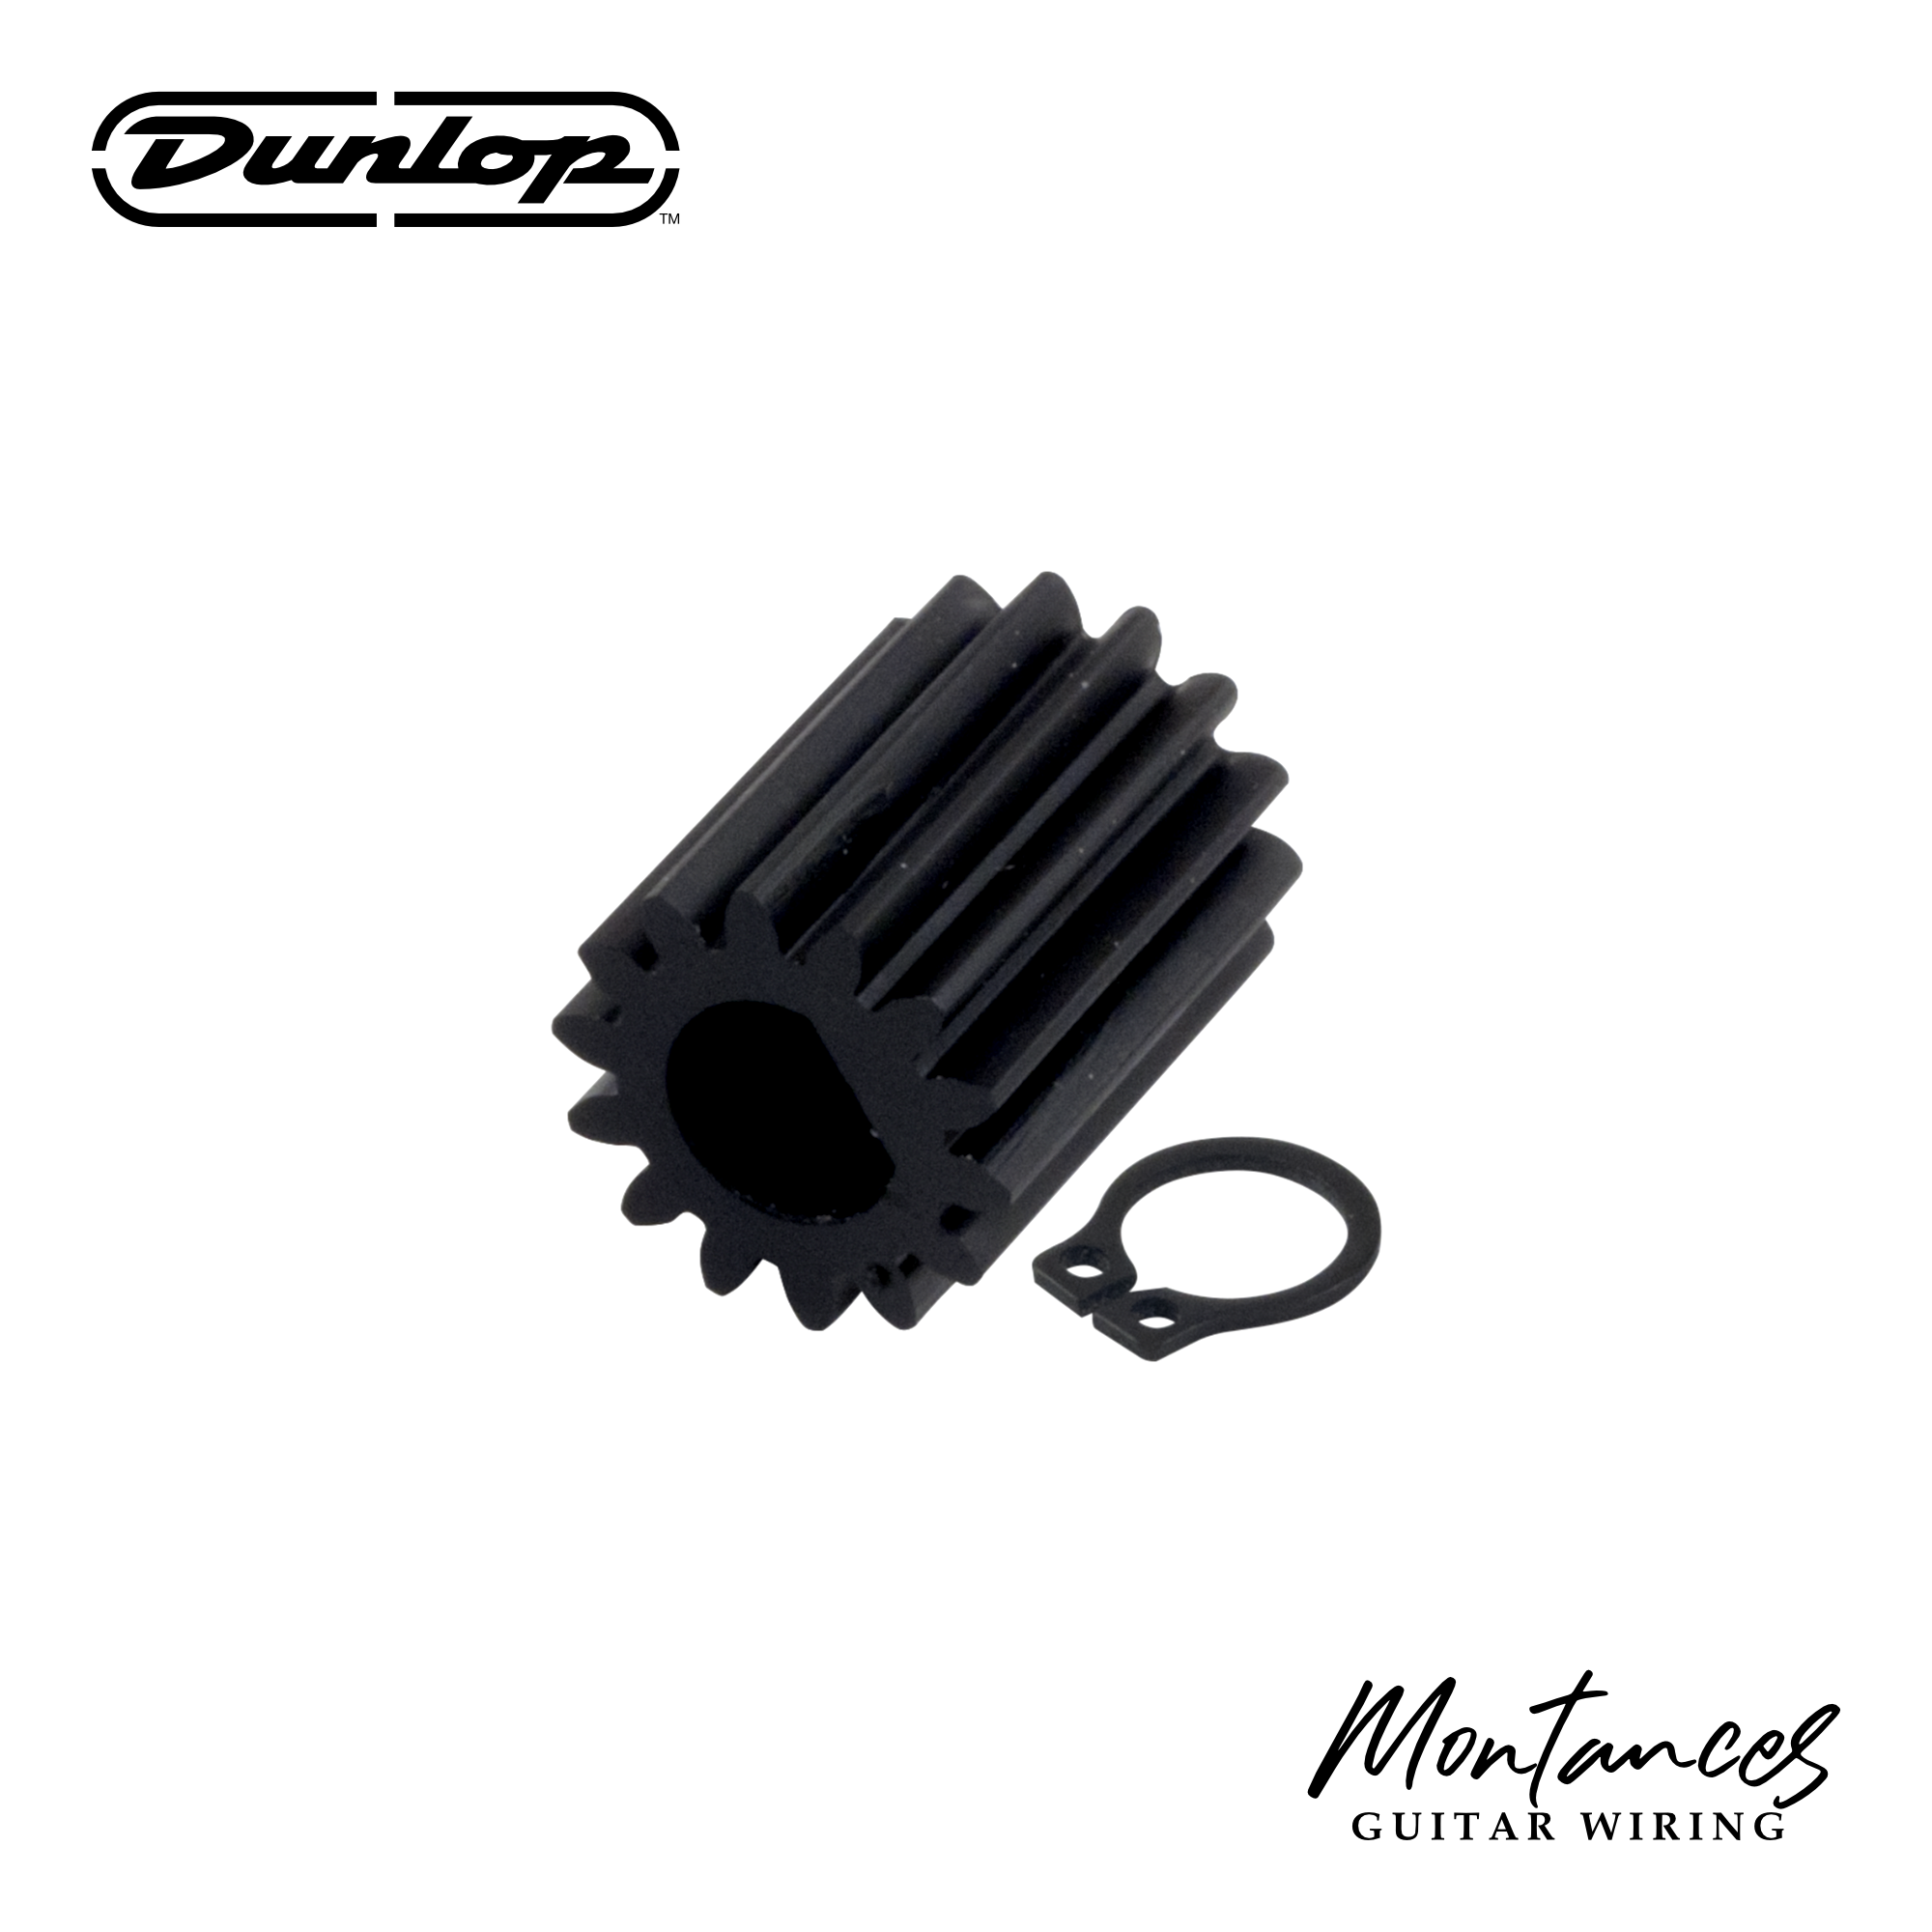 Dunlop Gear replacement for Wah D-shaft pots